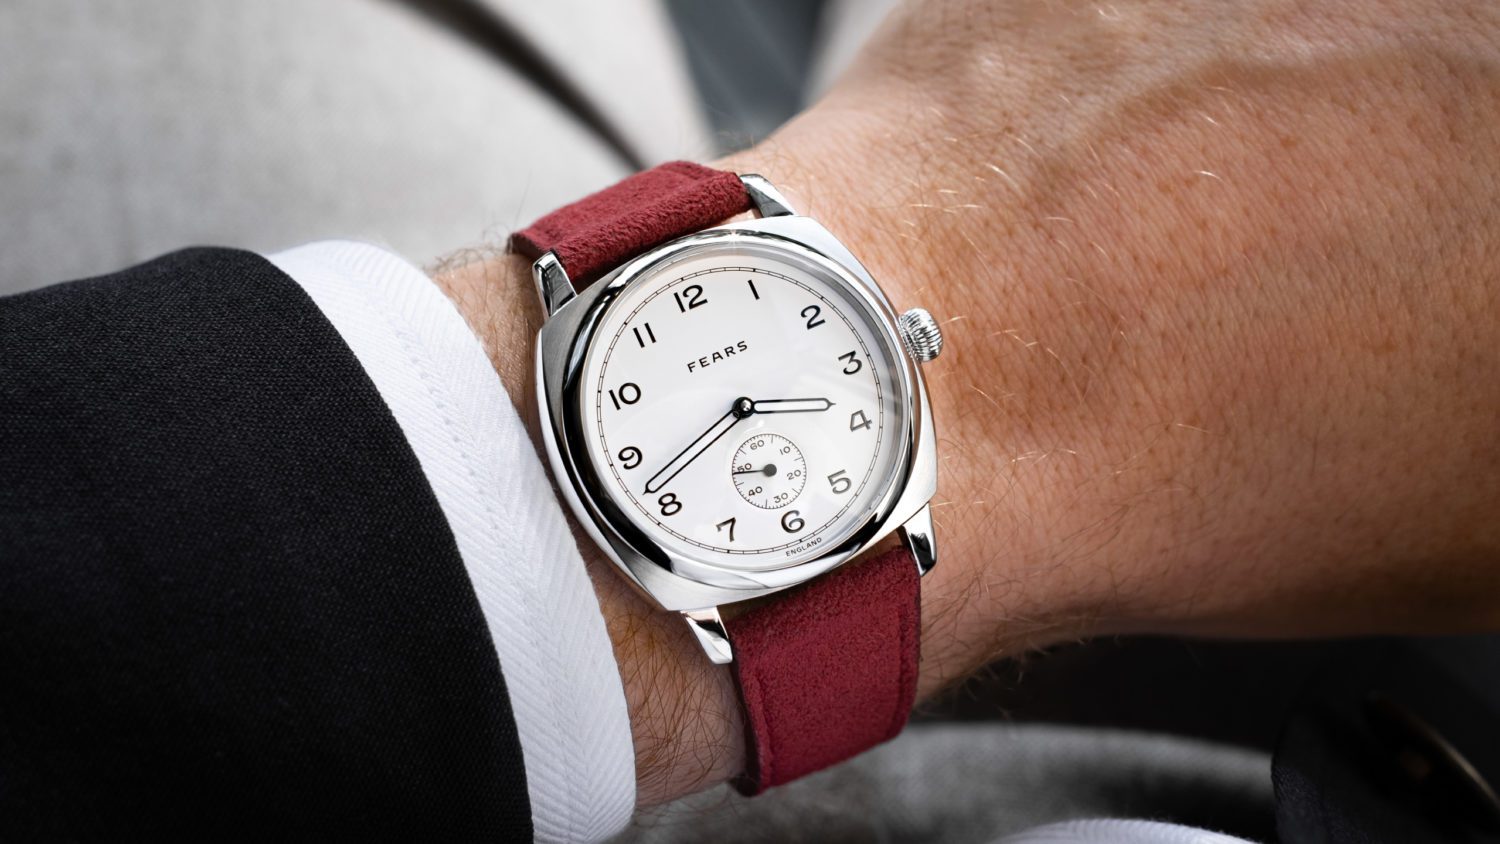 Gracieux et complexe, le Brunswick tout en courbes est un objet exigeant à créer. Elle s’inspire d’une montre à boîtier coussin pour homme des archives Fears, fabriquée pour la première fois en 1924.